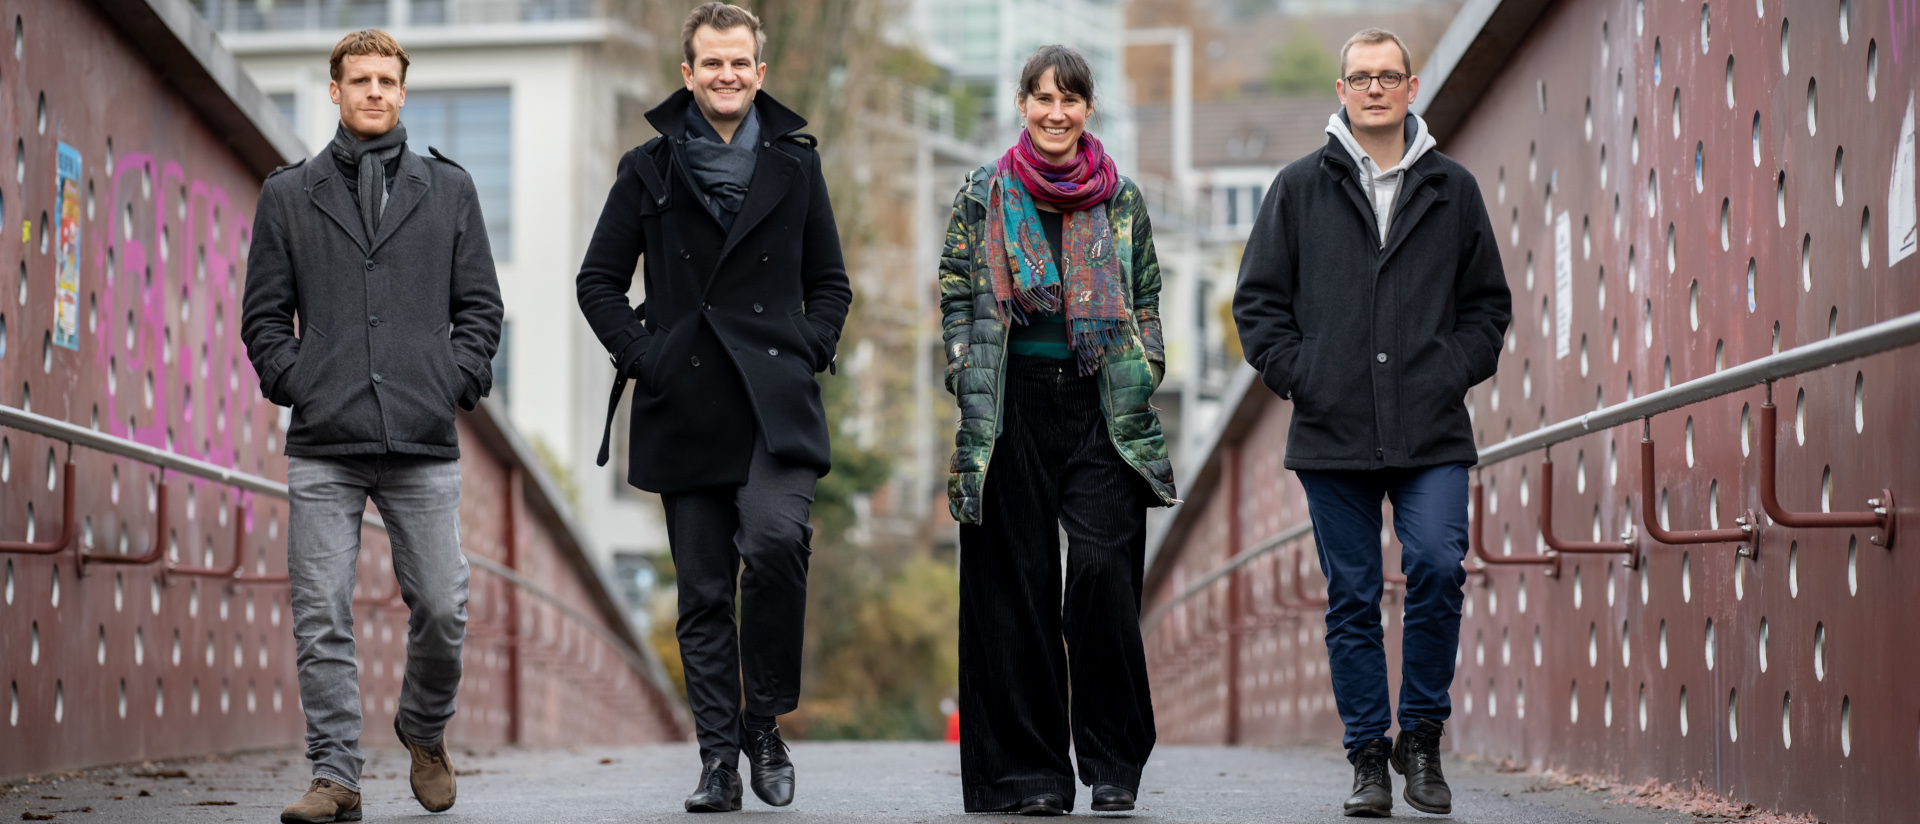 Valentin Beck, Raphael Rauch, Andrea Meier und Martin Föhn sind unterwegs als "Theologisches Quartett"